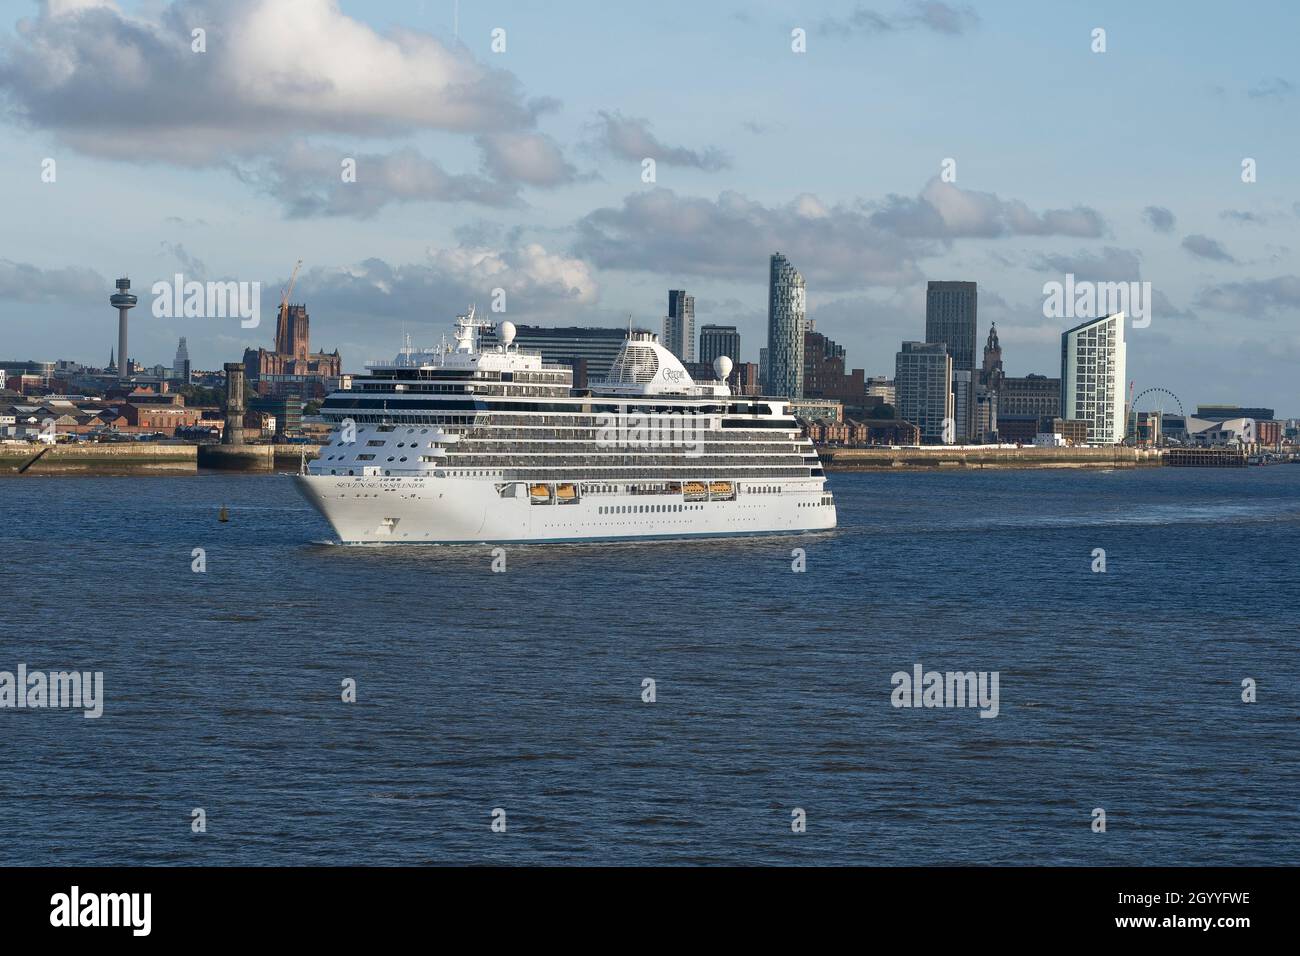 Le bateau de croisière Regent Seven Seas Splendor quitte Liverpool avec les gratte-ciel de la ville en arrière-plan Banque D'Images